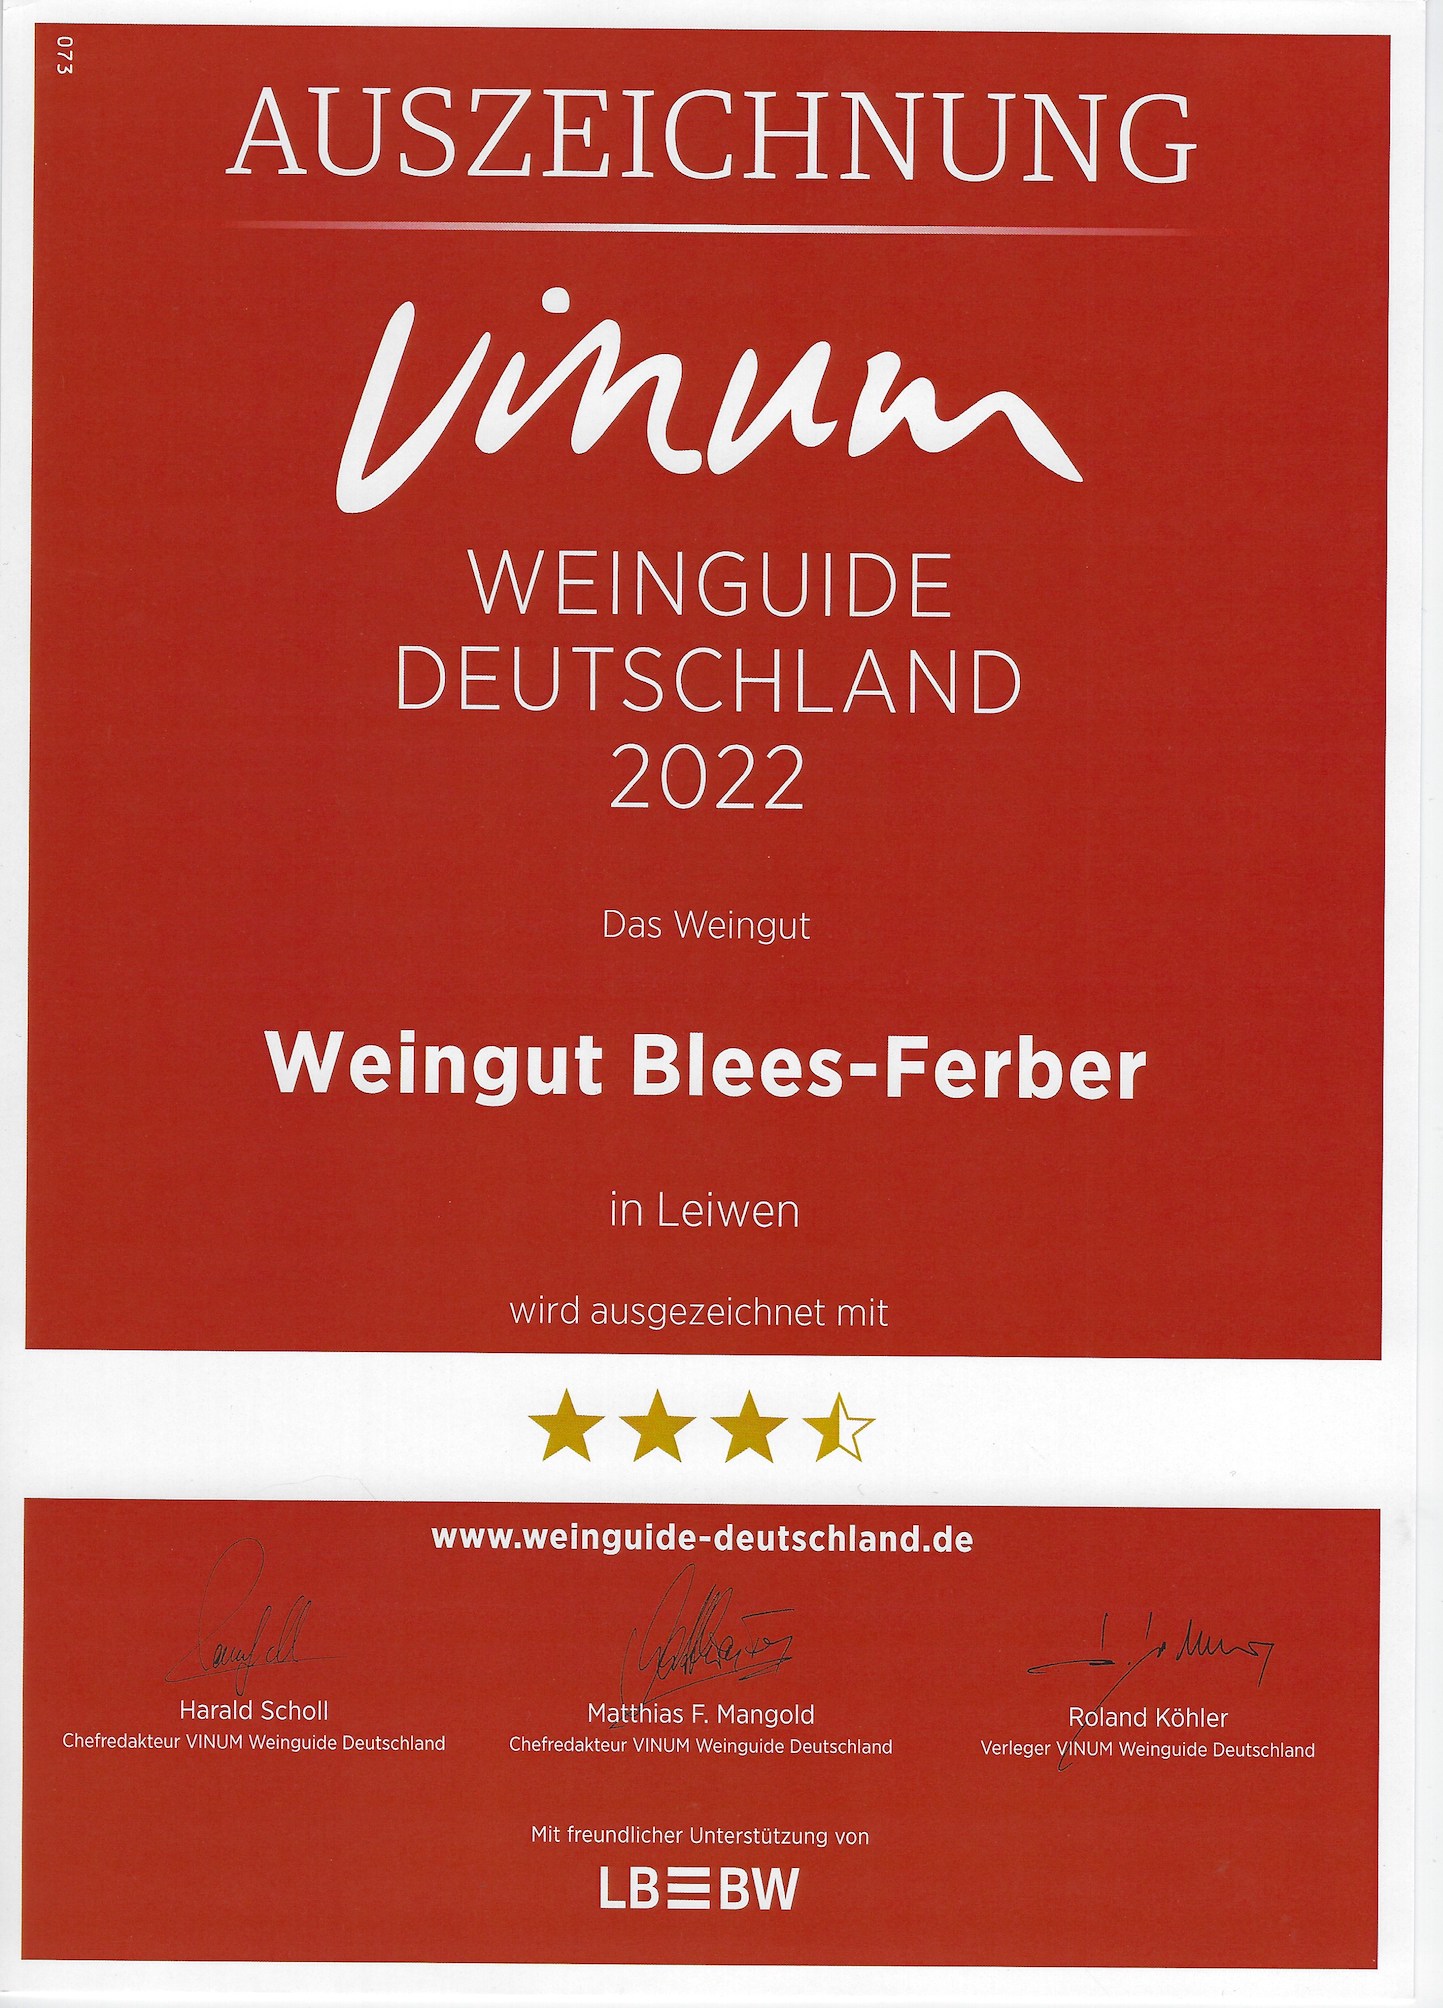 Weinguide Deutschland